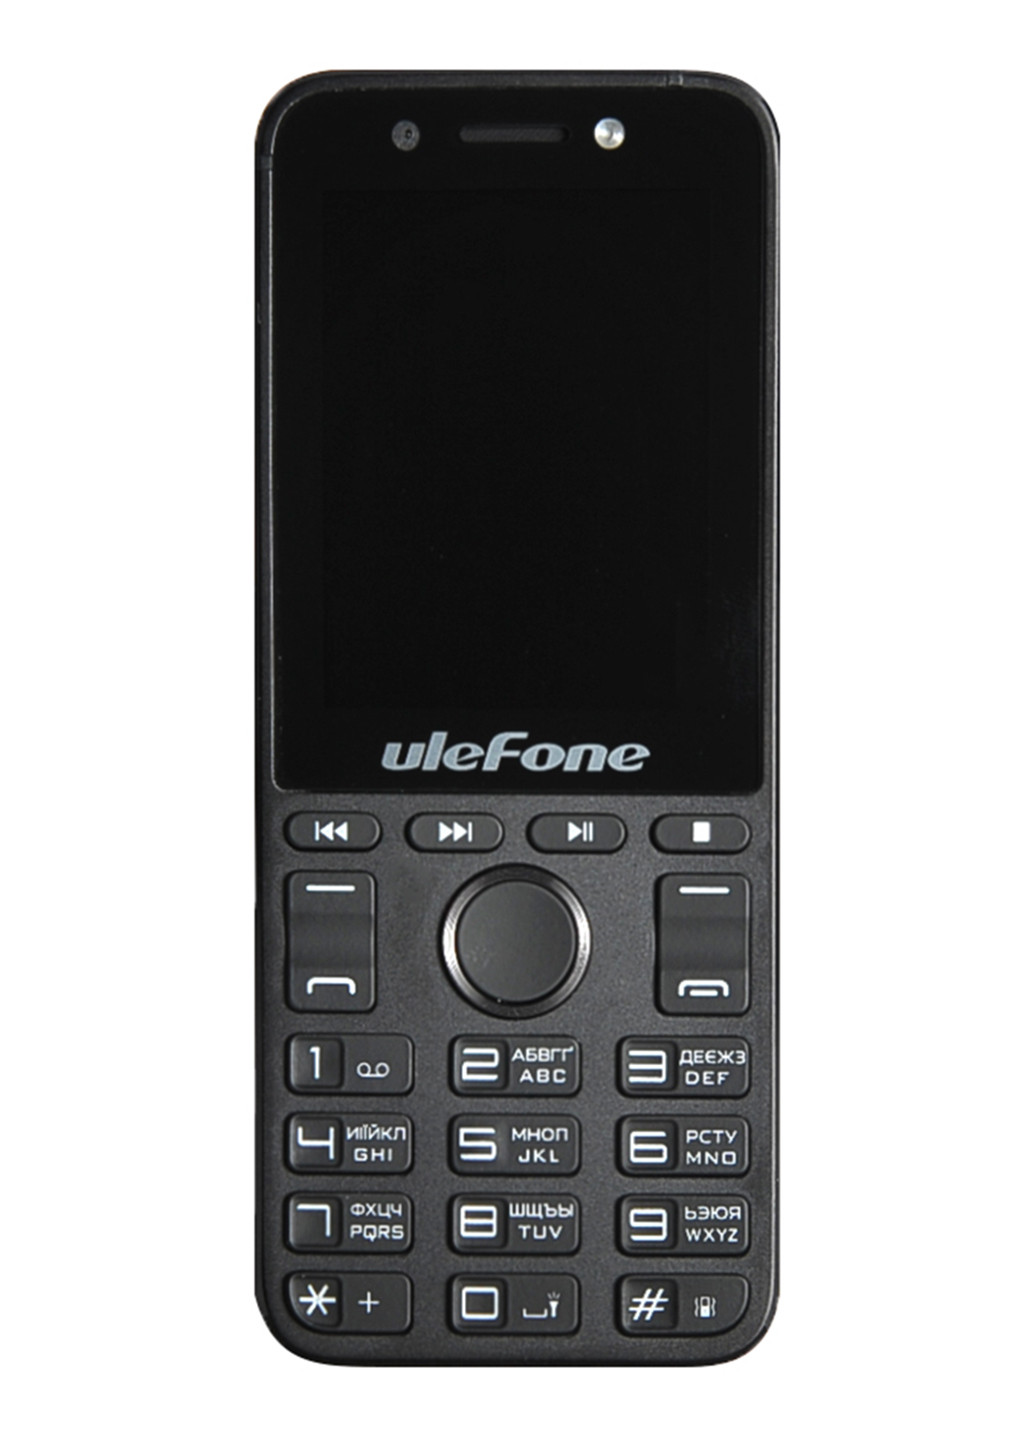 Мобильный телефон Ulefone a1 black (132824477)